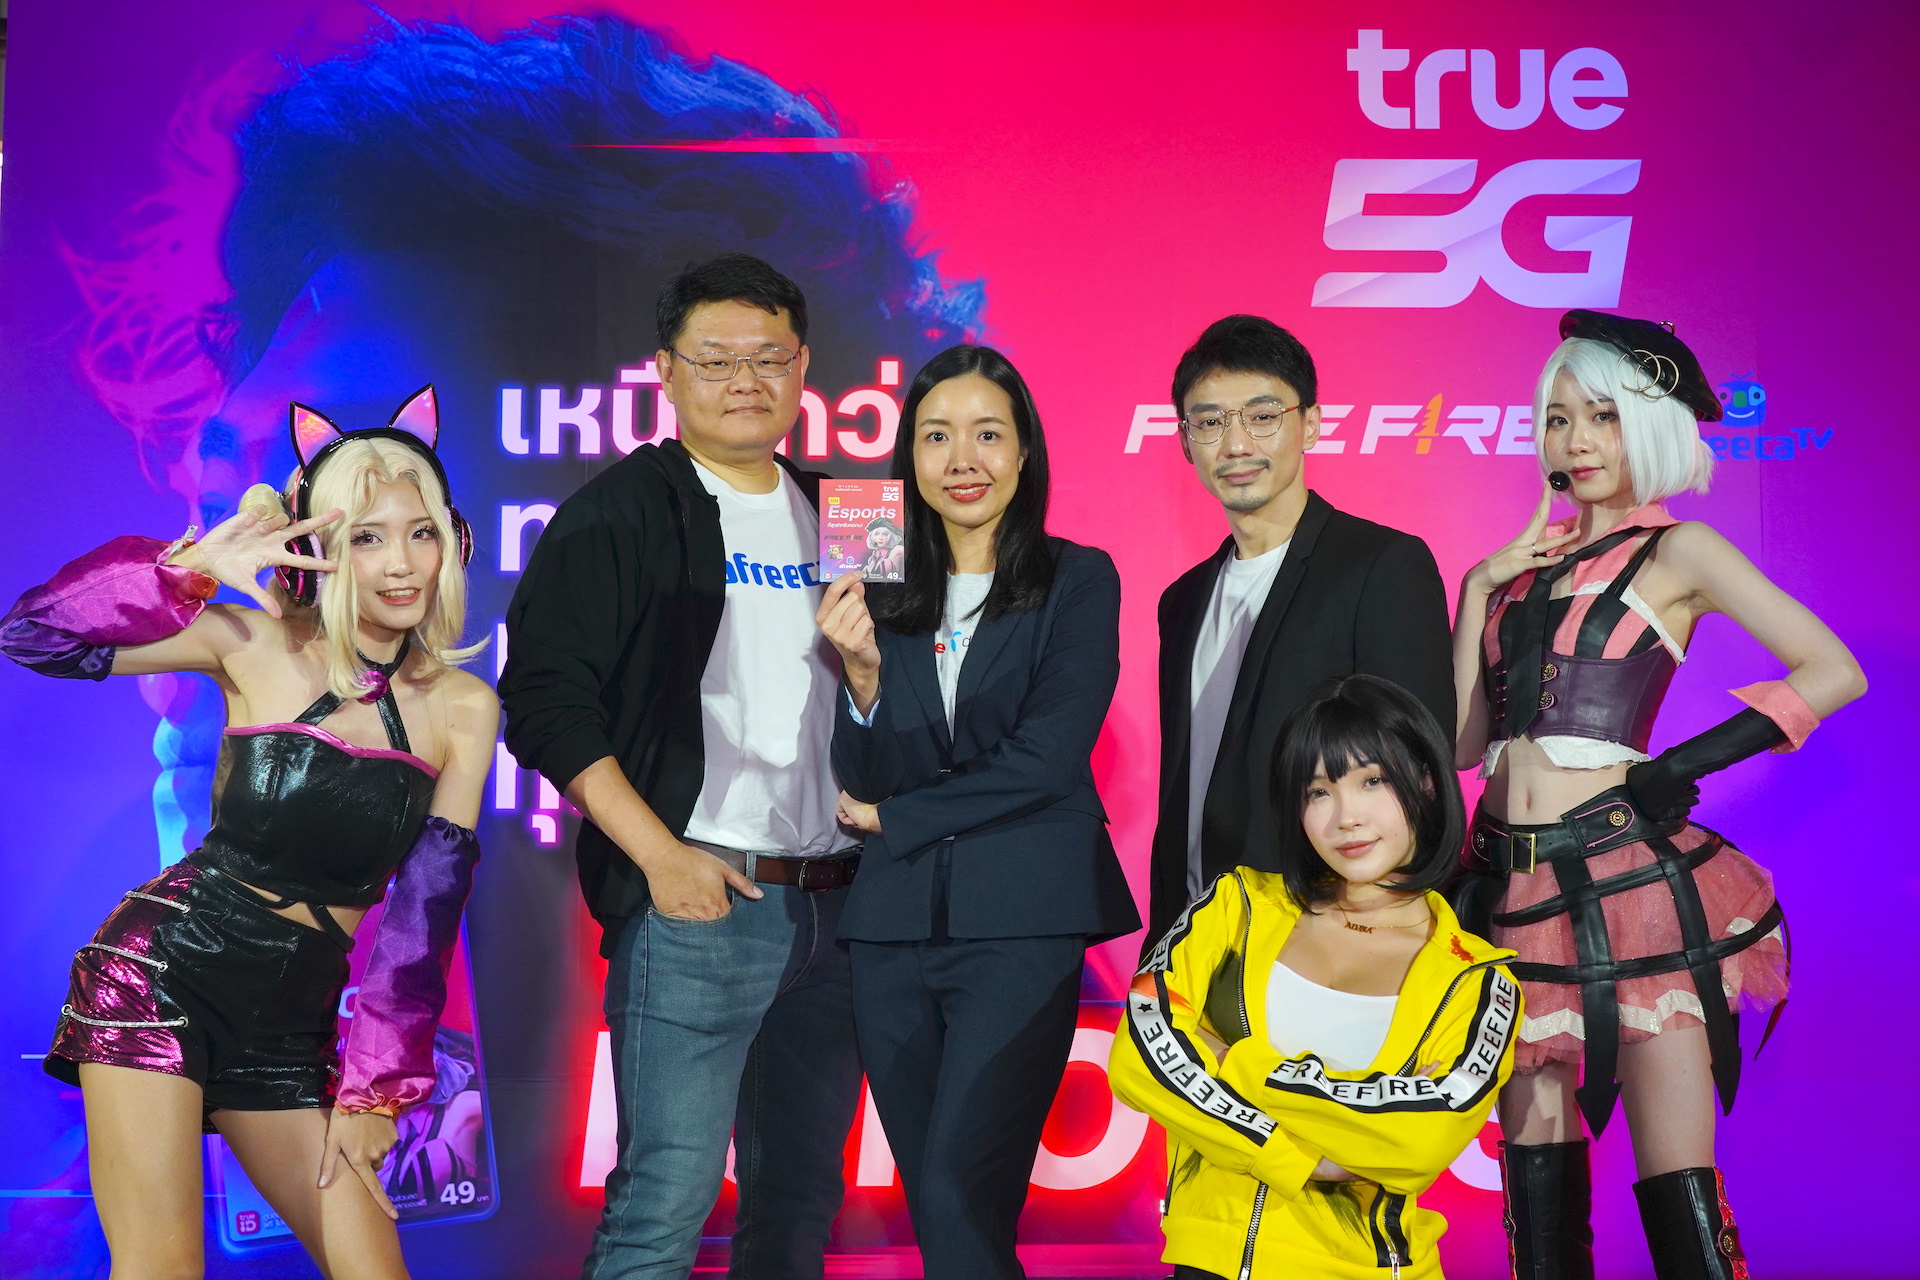 ทรู 5G ผนึกกำลังพันธมิตรทั้งจากสิงค์โปร์ -การีนา และจากเกาหลีใต้- อาฟรีคาทีวี ร่วมติดปีกวงการอีสปอร์ตไทย พานักกีฬาไทยสู่สากล เสิร์ฟซิม “True5G ESPORTS” แบบเติมเงิน มาเหนือกว่าทุกแรงก์     